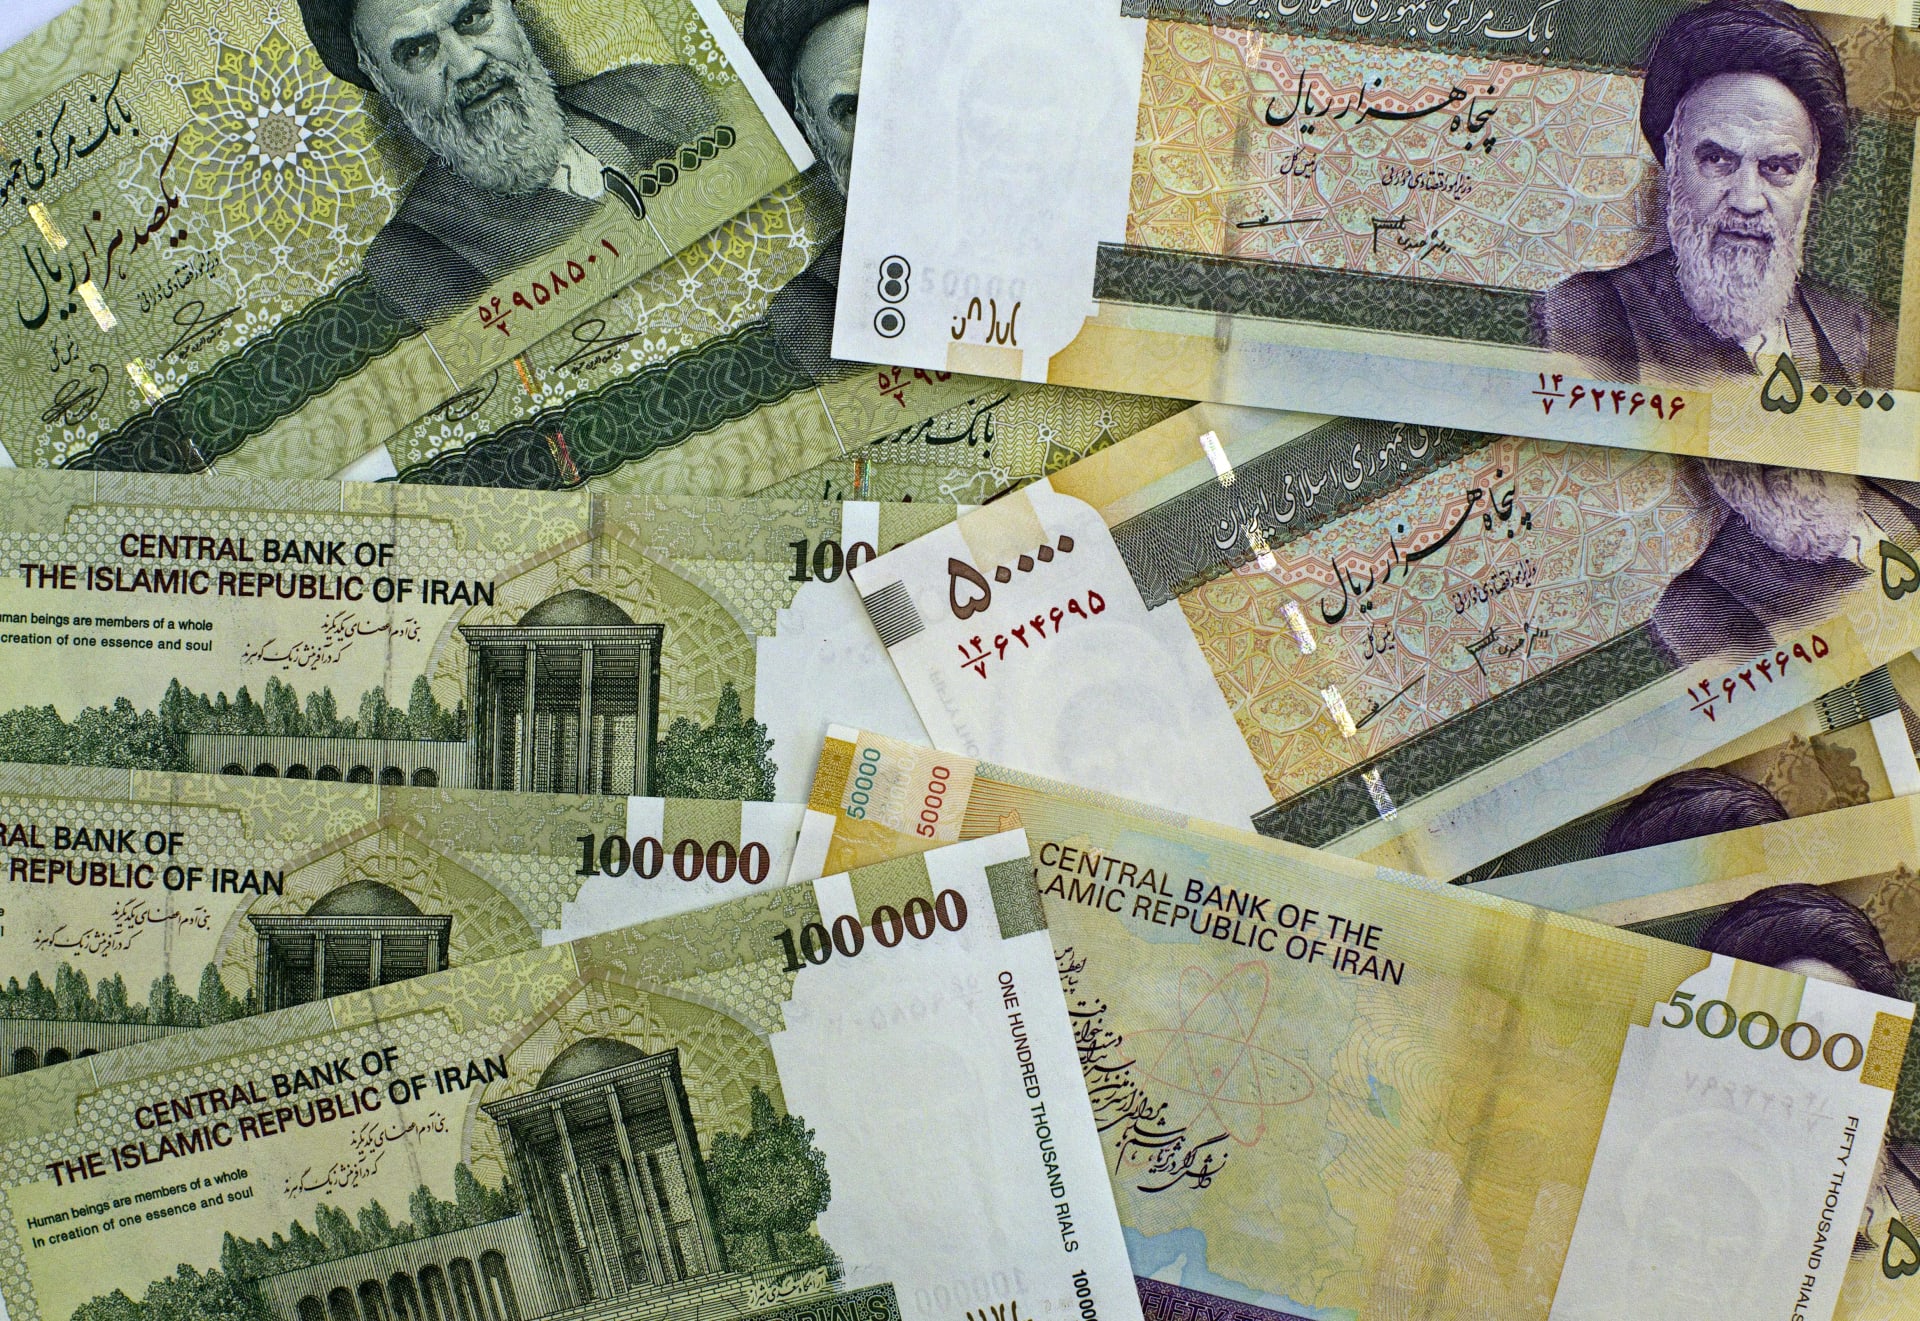 أزمة العملة في إيران تتفاقم.. والحكومة تتدخل